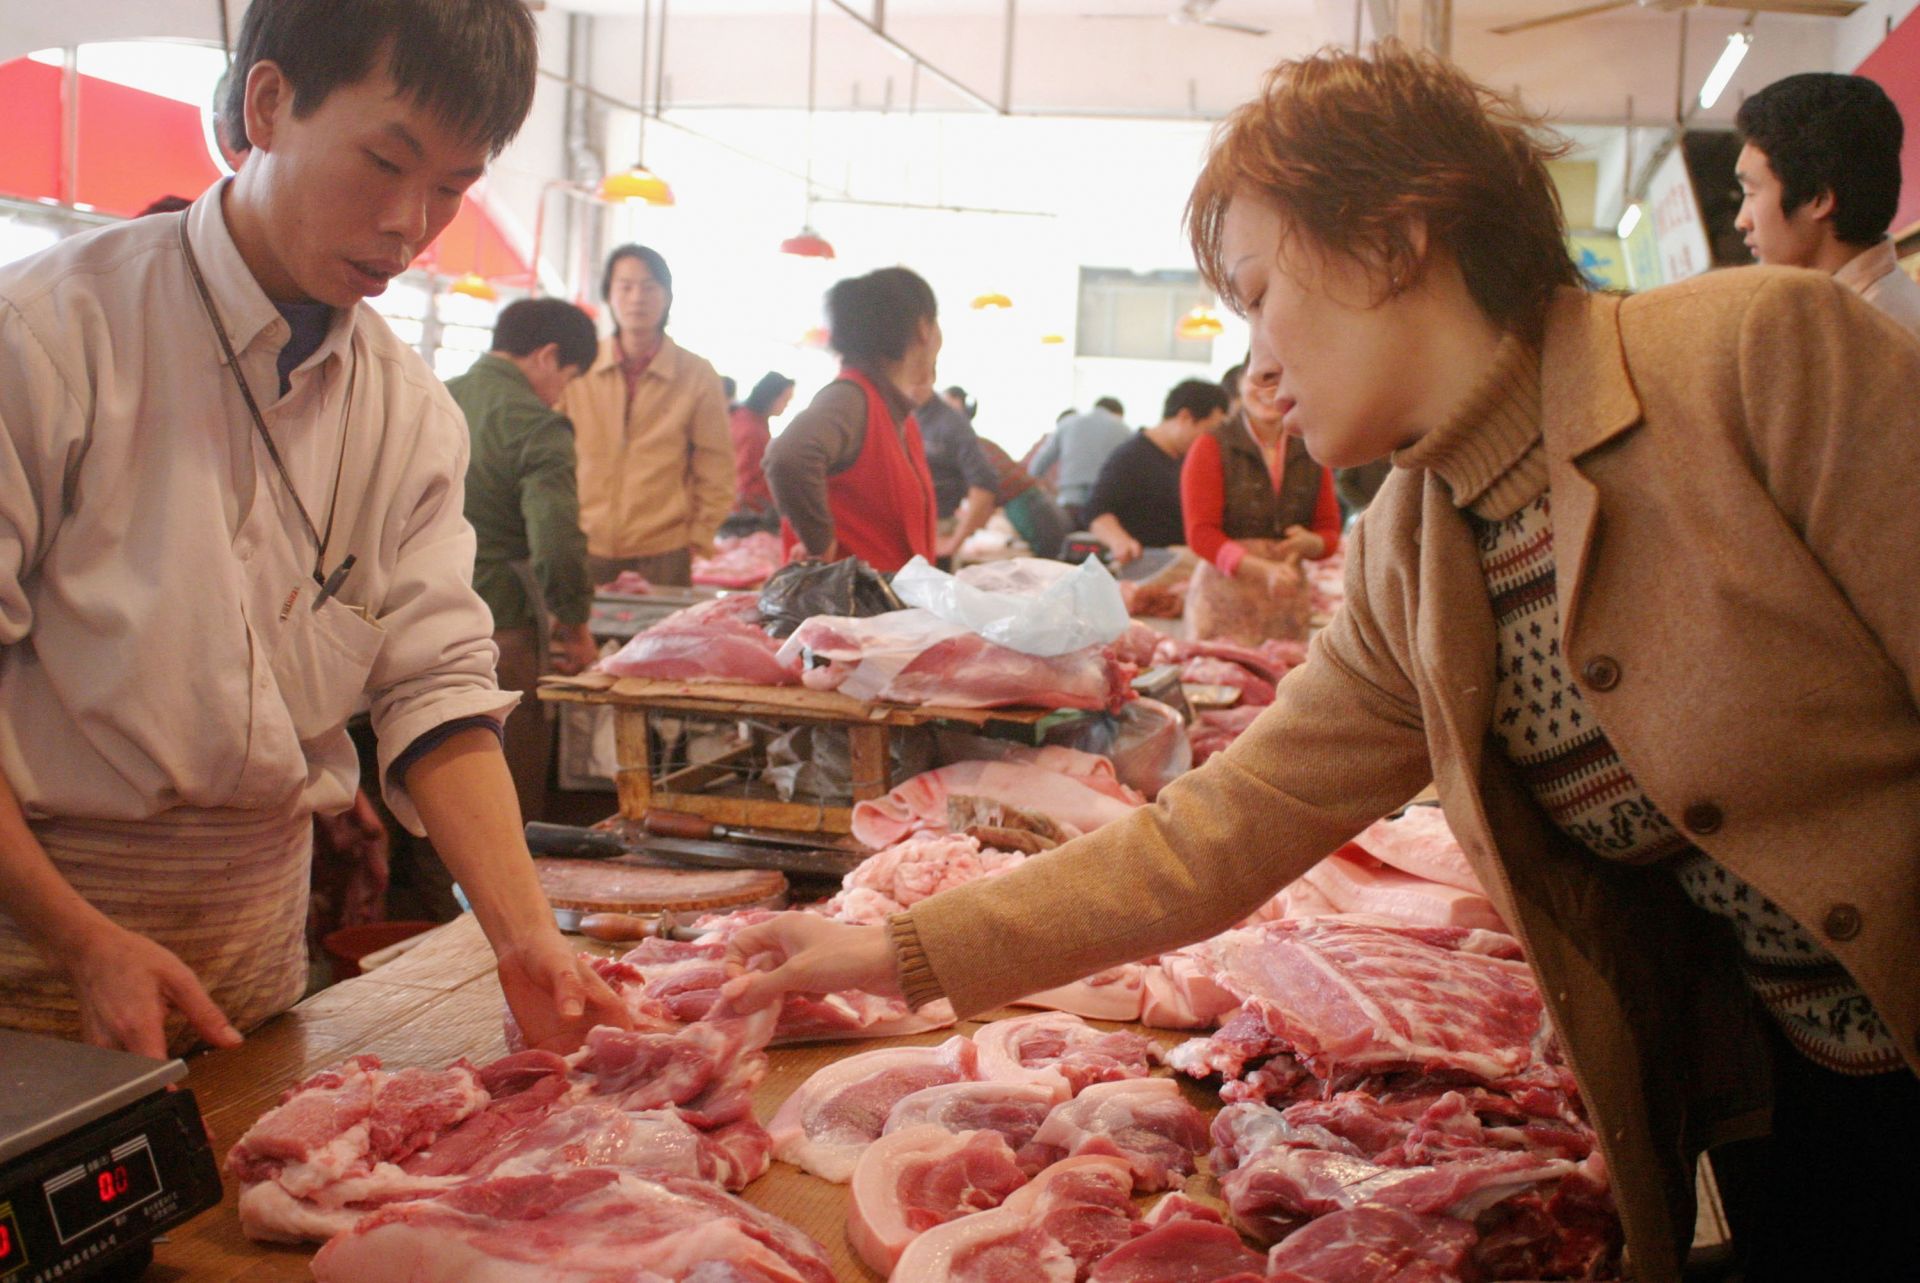 13 януари 2003 г.: Жена купува месо на пазар в Шенжен, Китай, откъдето се твърди, че тръгва заразата